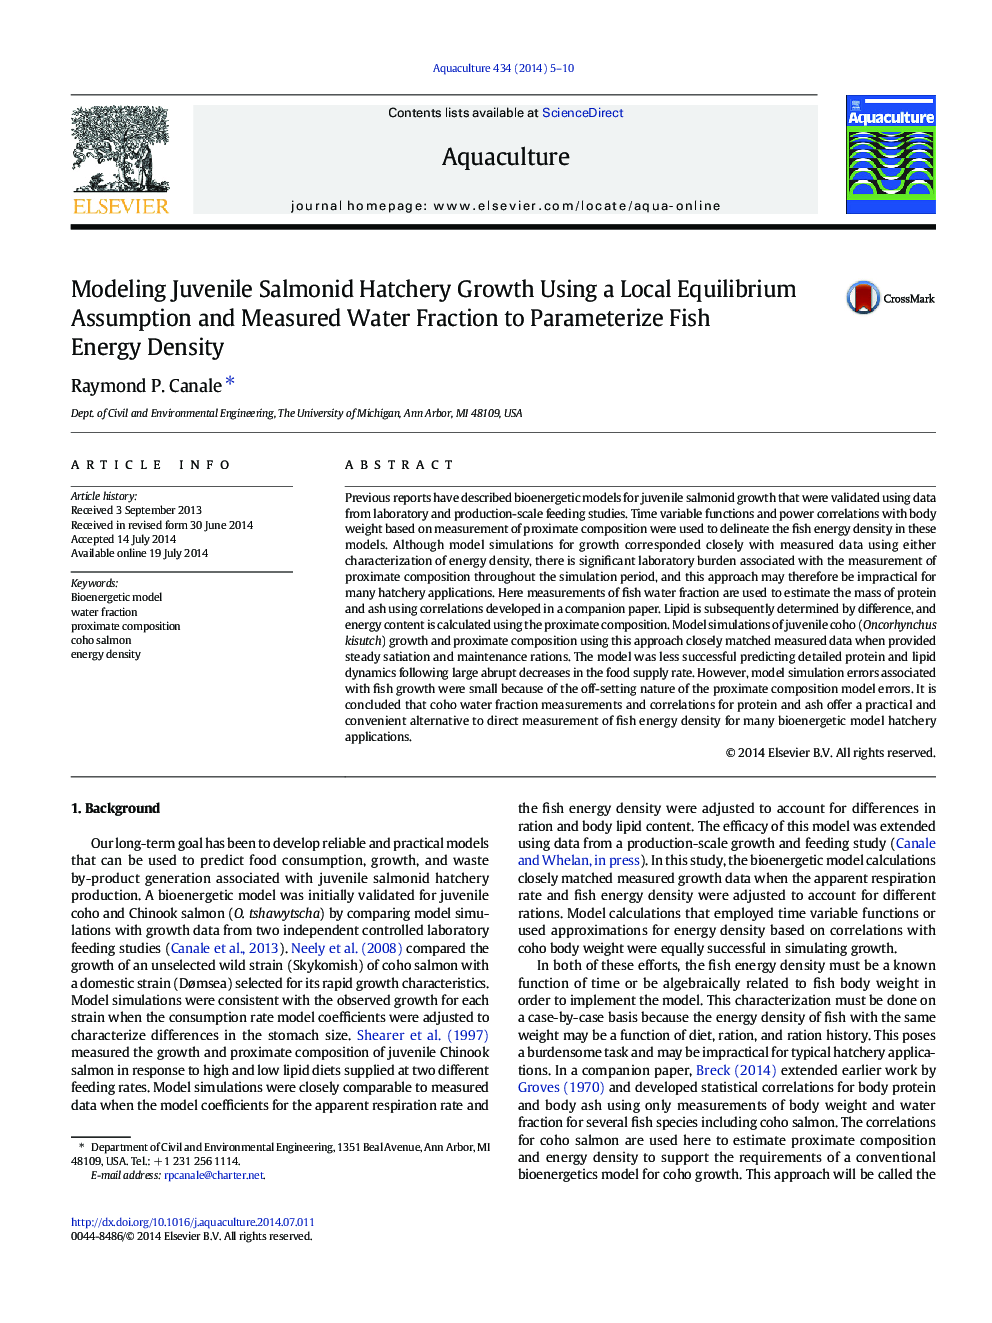 مدل سازی رشد جوجه های گوشتی سالمندی با استفاده از معیار تعادل محلی و اندازه گیری مقدار آب برای تعیین پارامترهای اندازه گیری تراکم انرژی ماهی 